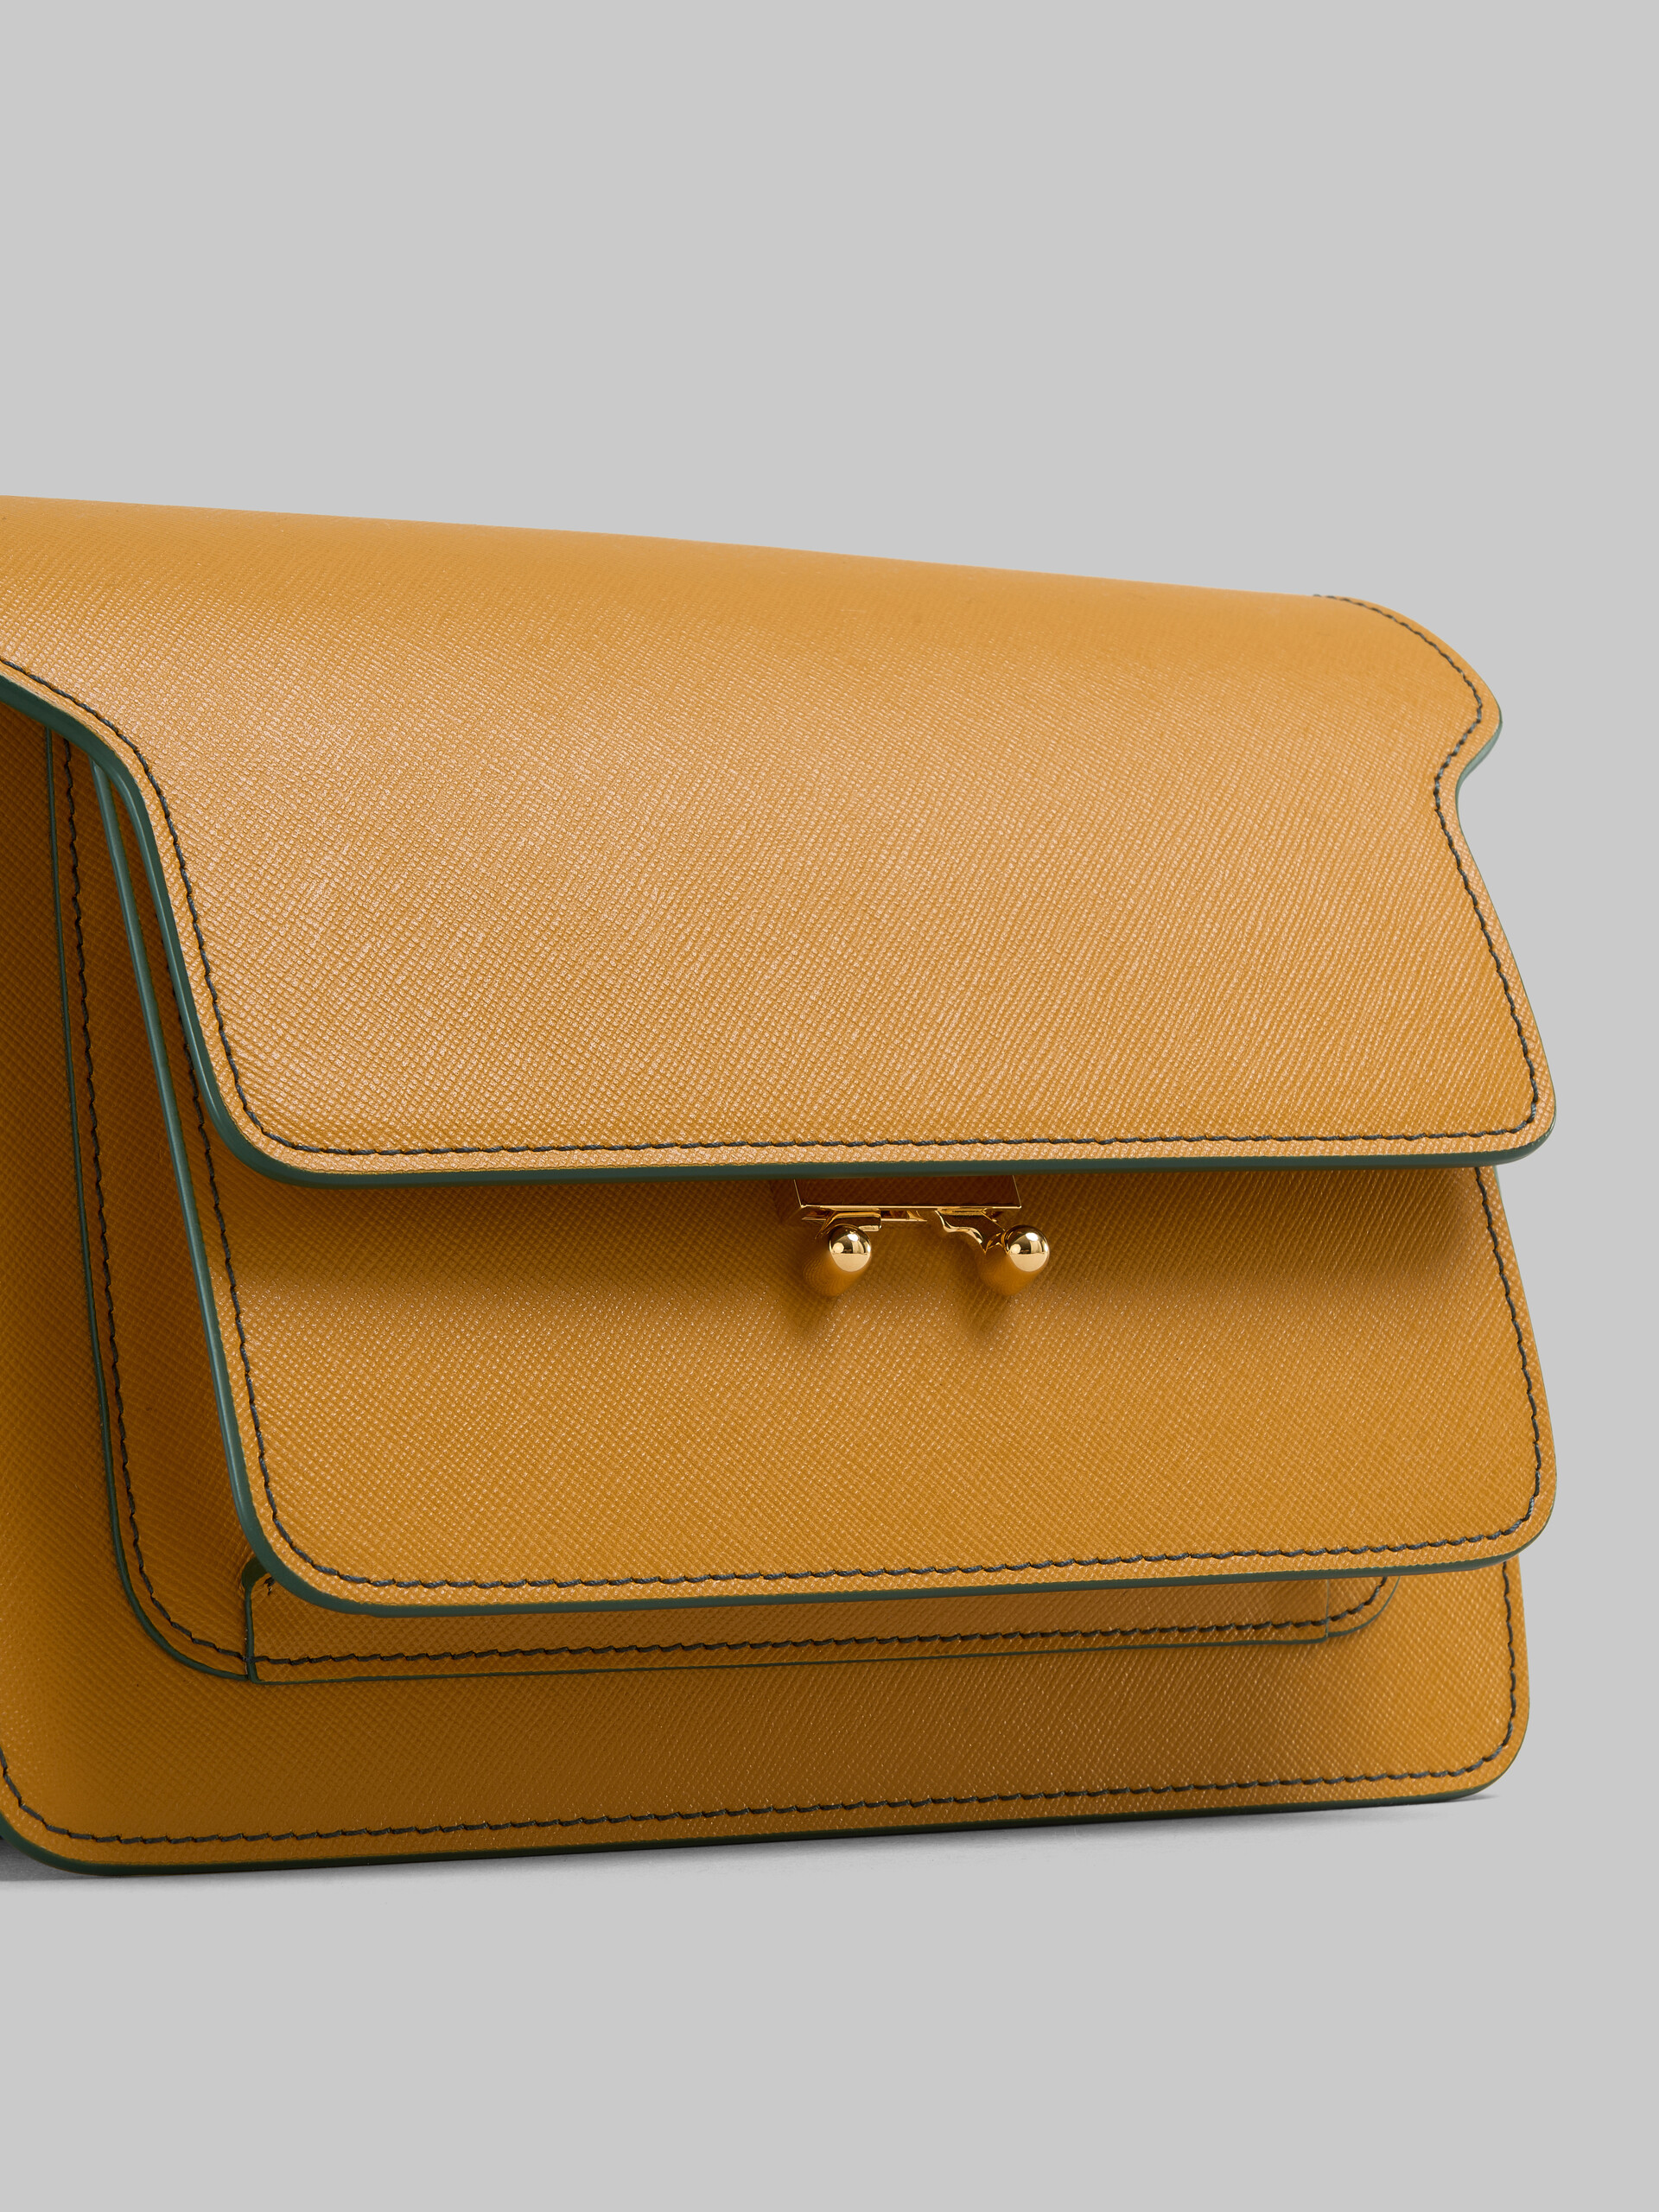 Sac Trunk de taille moyenne en cuir Saffiano beige - Sacs portés épaule - Image 5